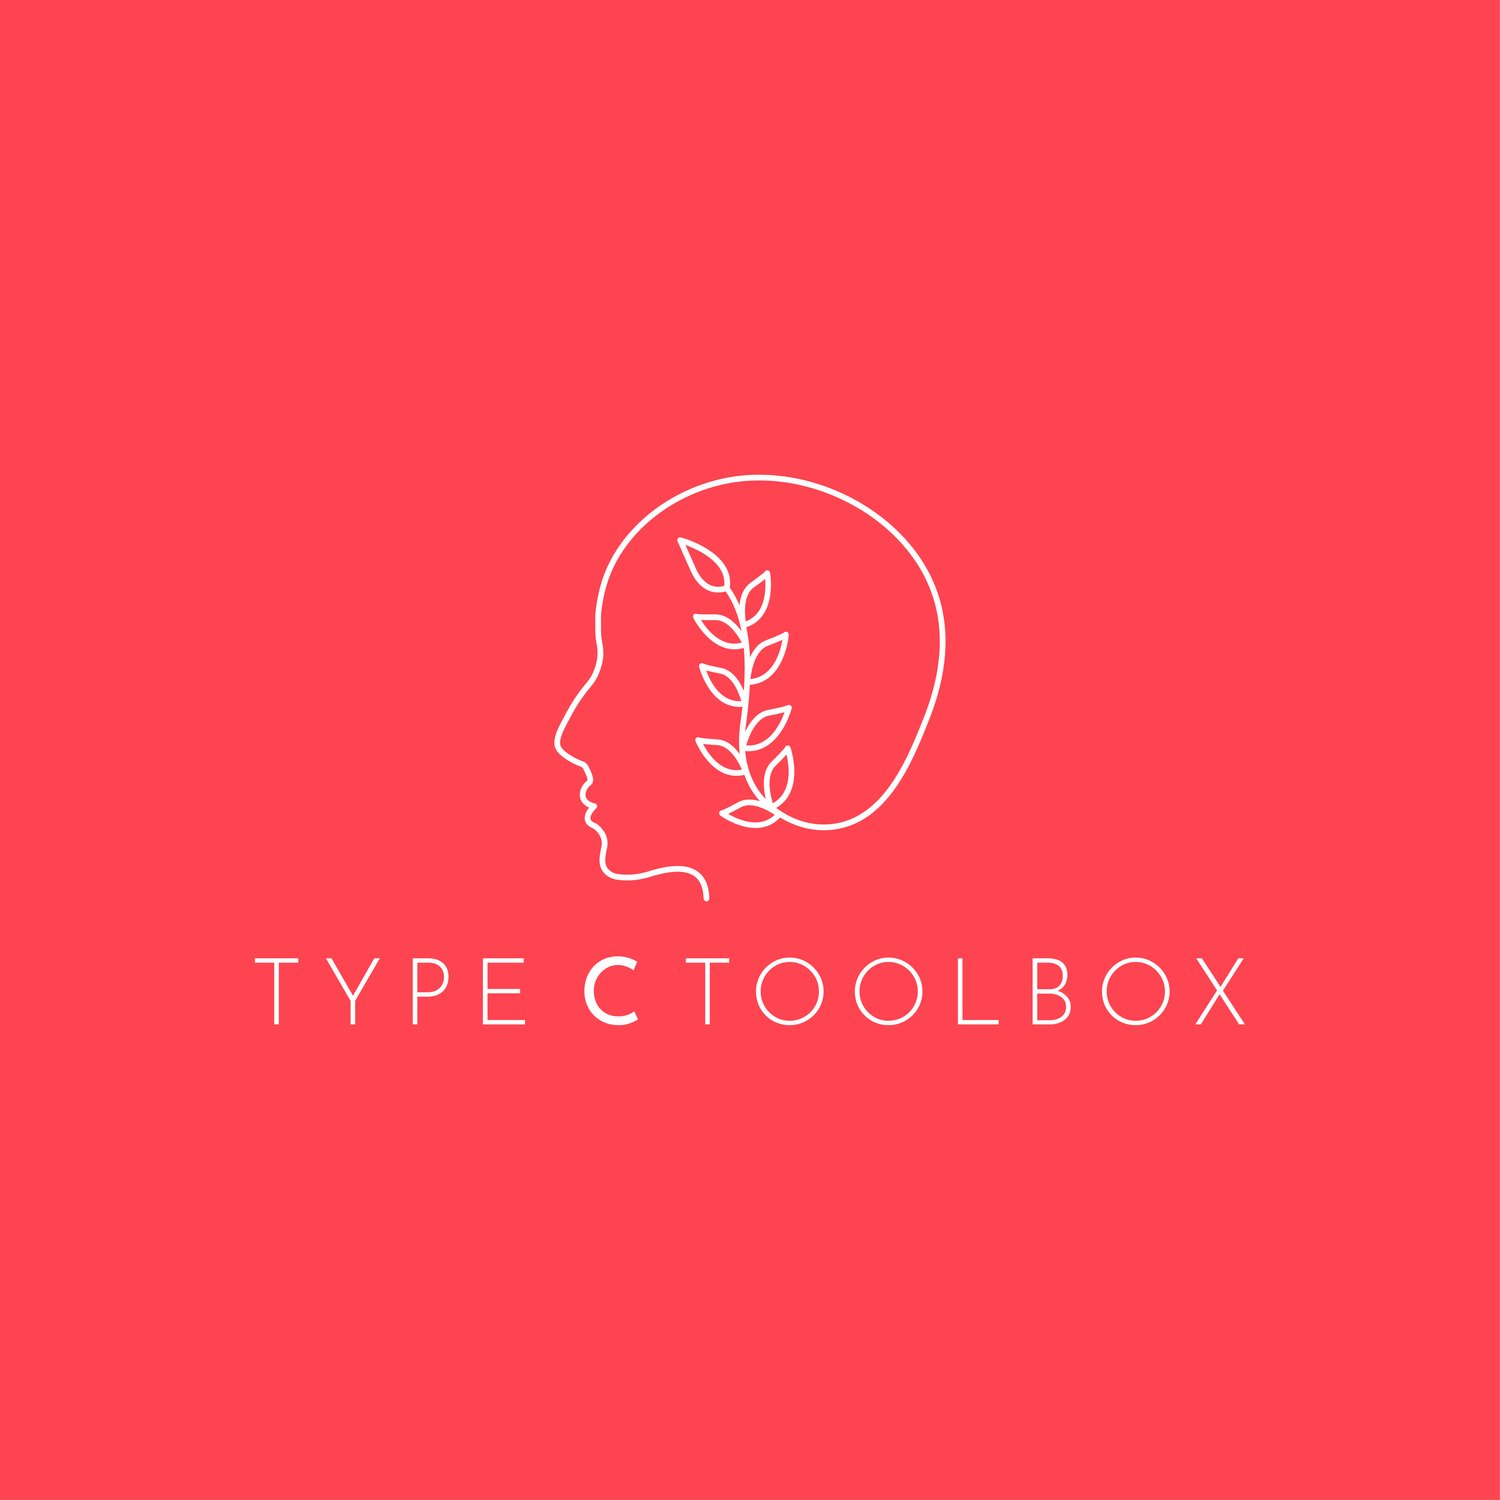 Type C Toolbox